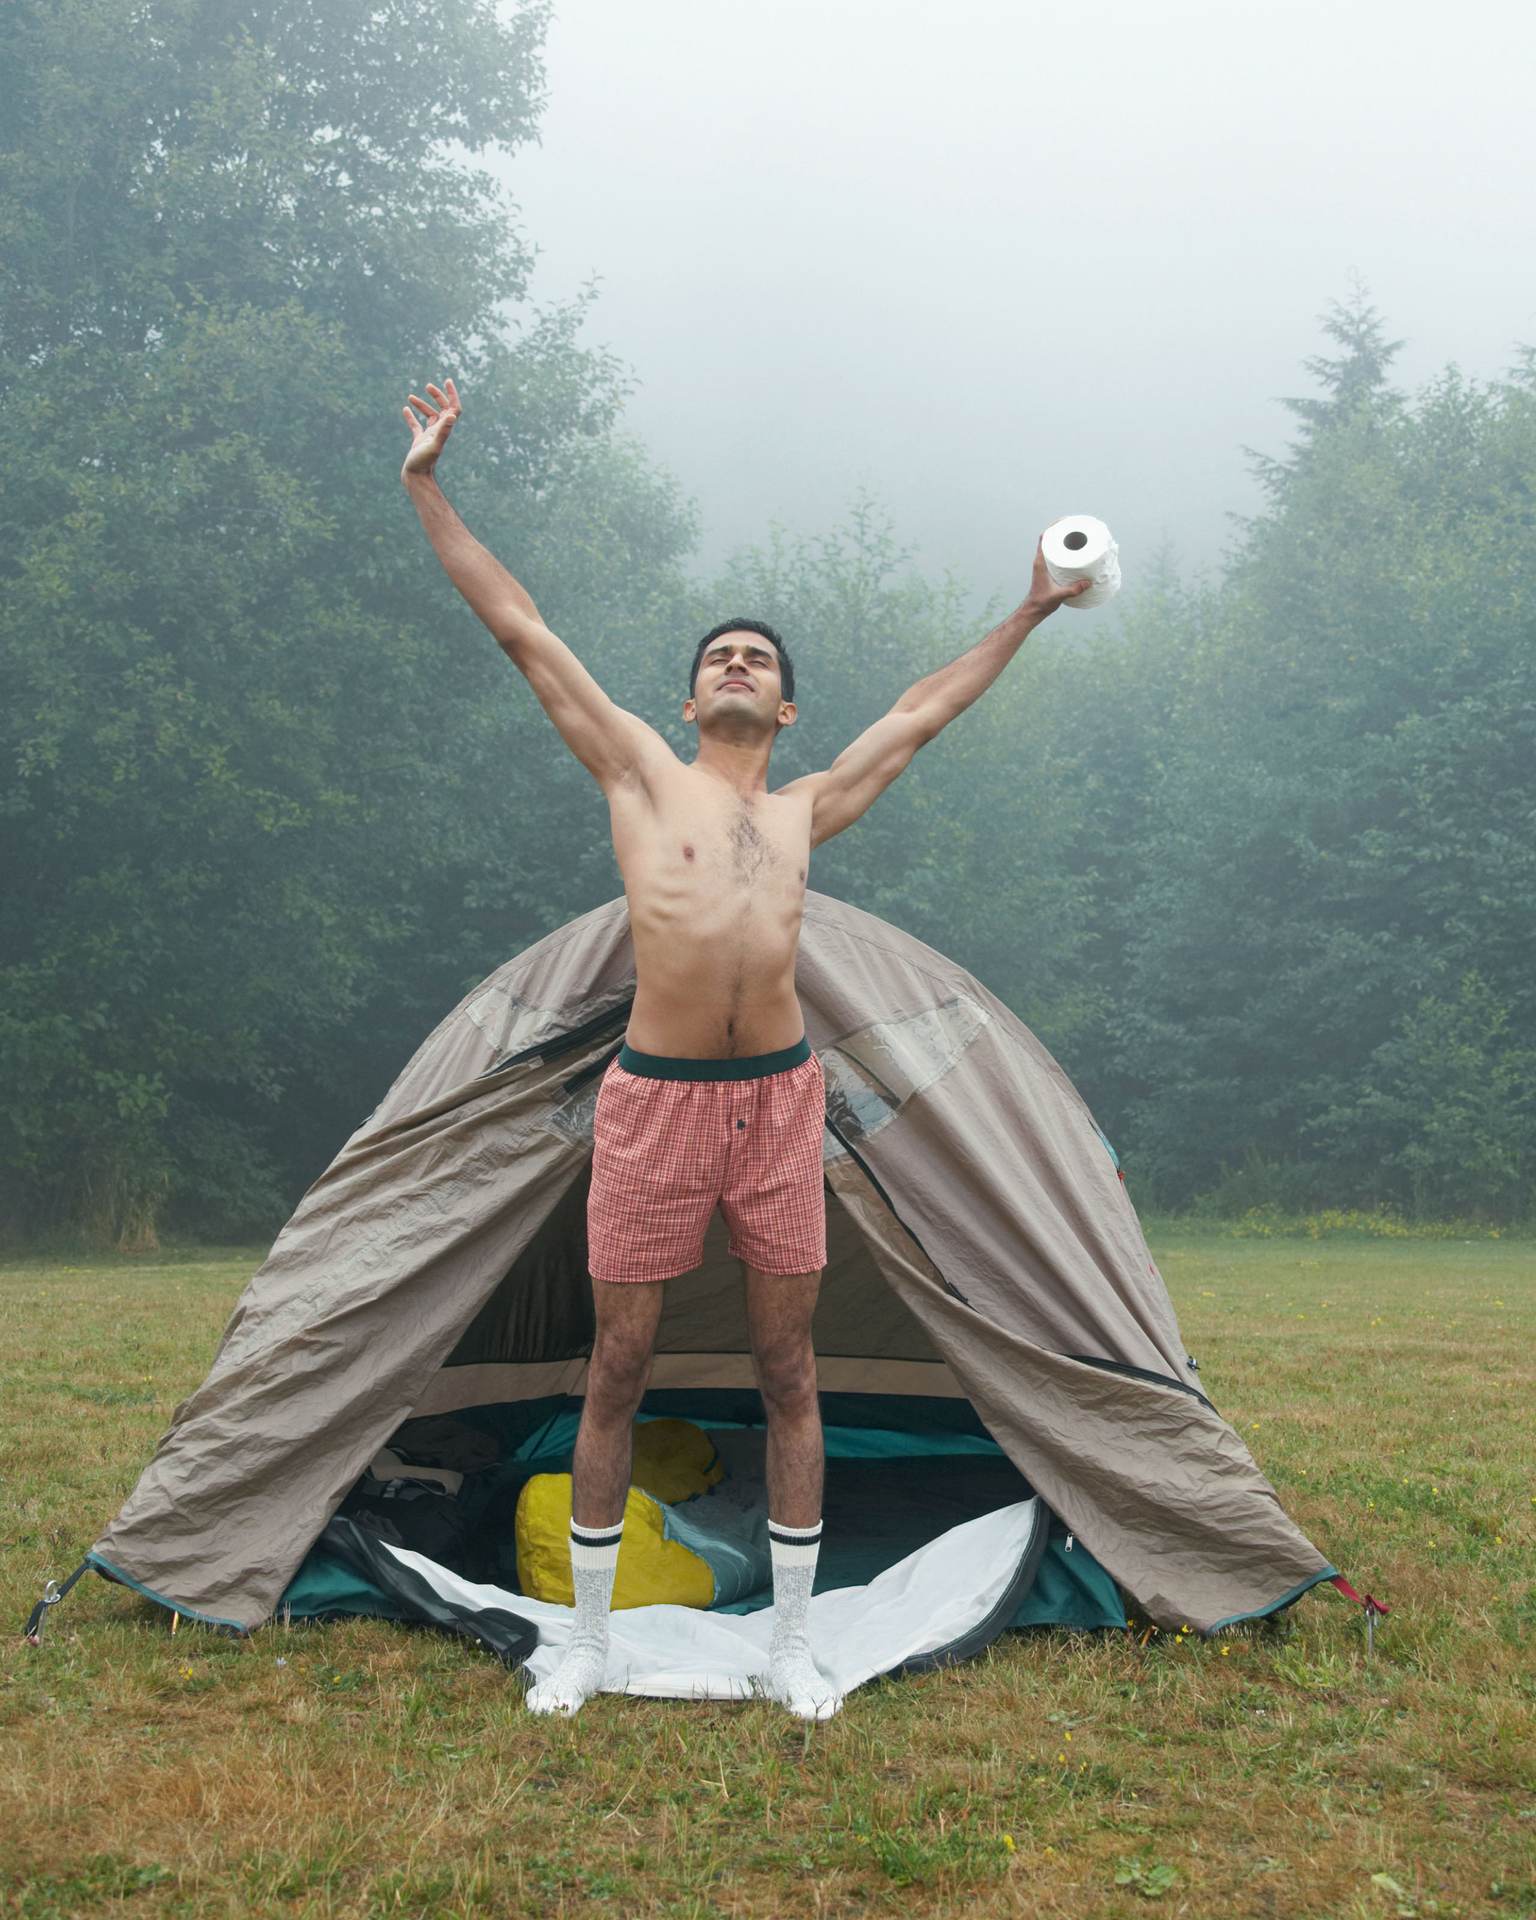 Live in THE LÄND, Ein Mann in Badehose steht vor einem Zelt und streckt sich. In seiner linken Hand hält er Toilettenpapier.